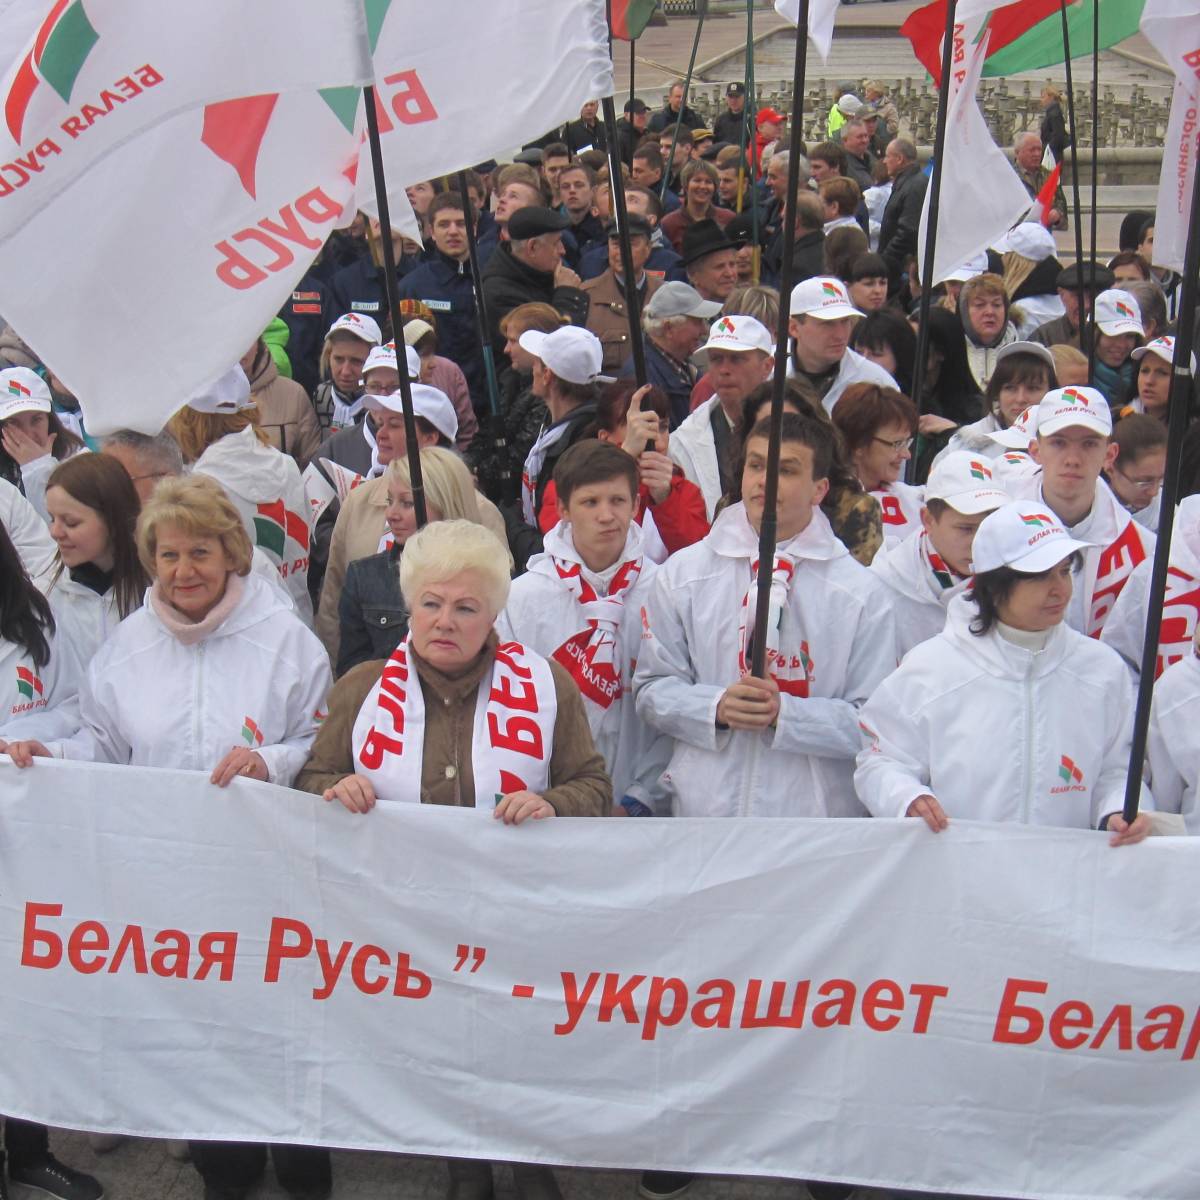 Белорусская партия власти признала новые регионы России